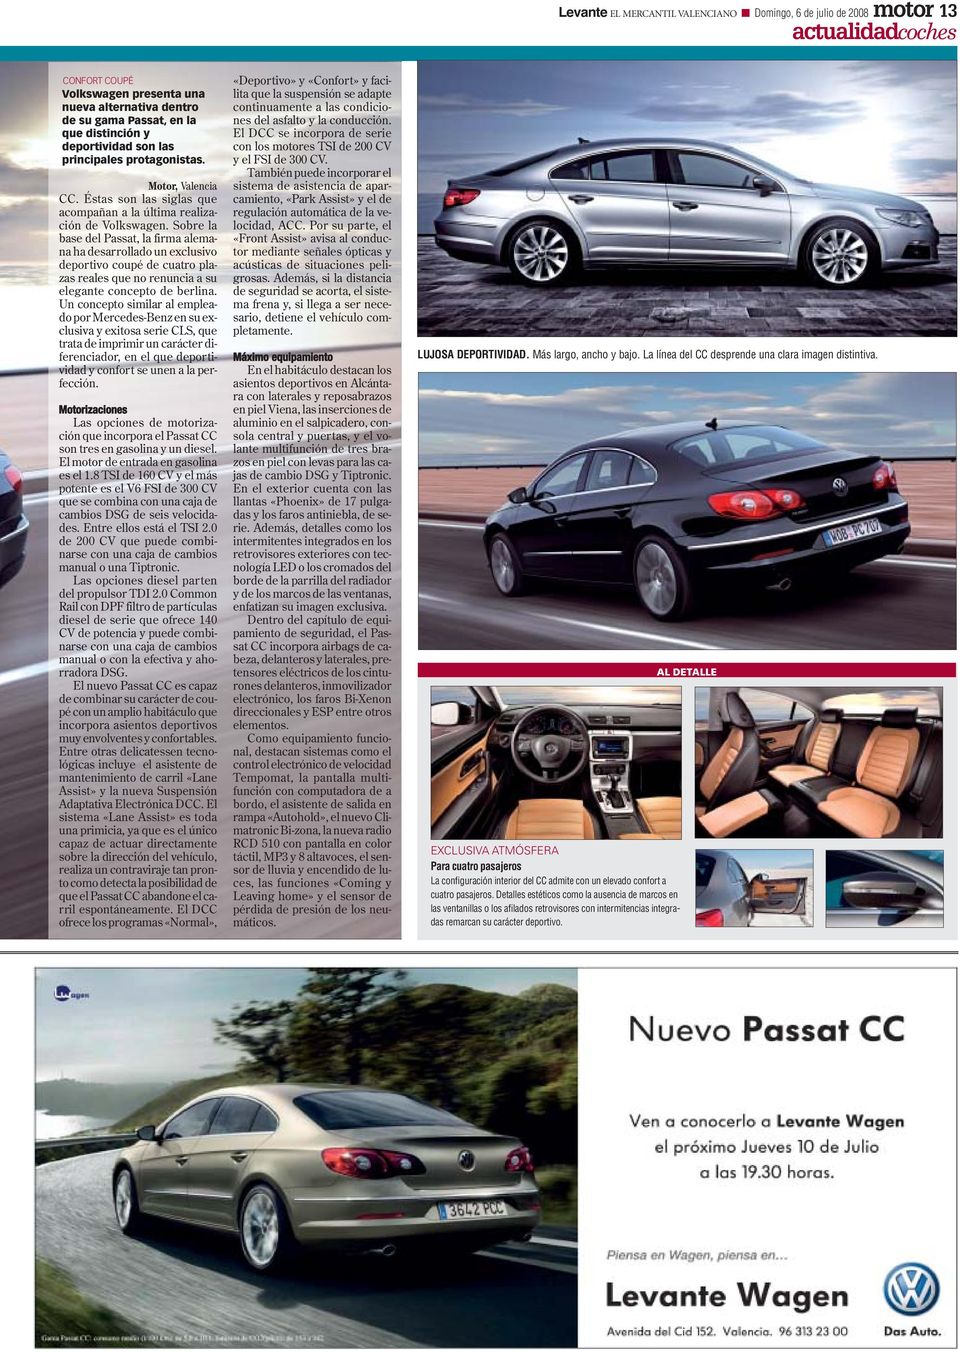 Sobre la base del Passat, la firma alemana ha desarrollado un exclusivo deportivo coupé de cuatro plazas reales que no renuncia a su elegante concepto de berlina.